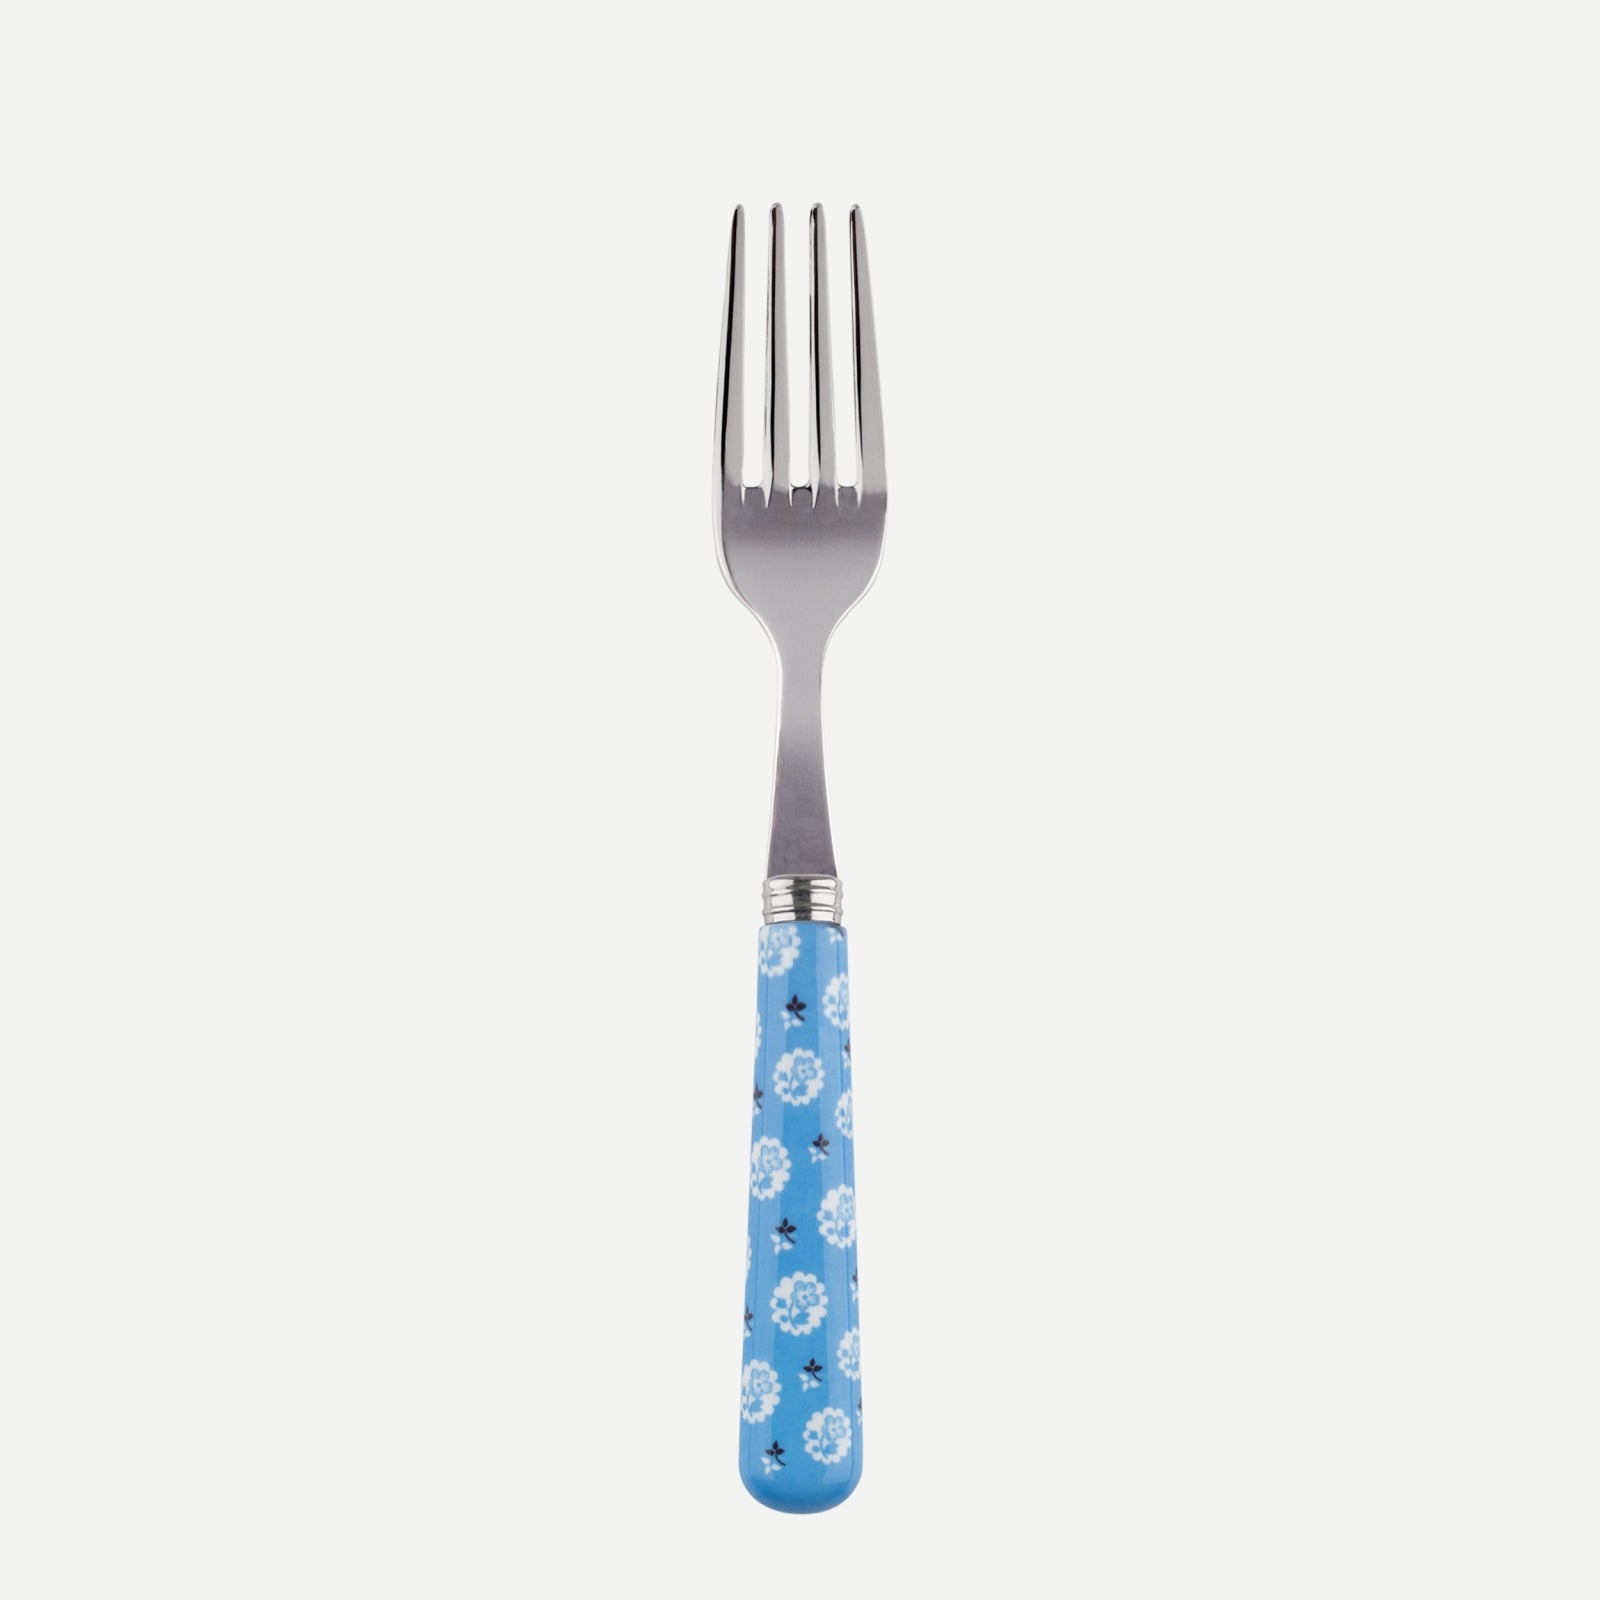 Petite fourchette - Provençale - Bleu clair